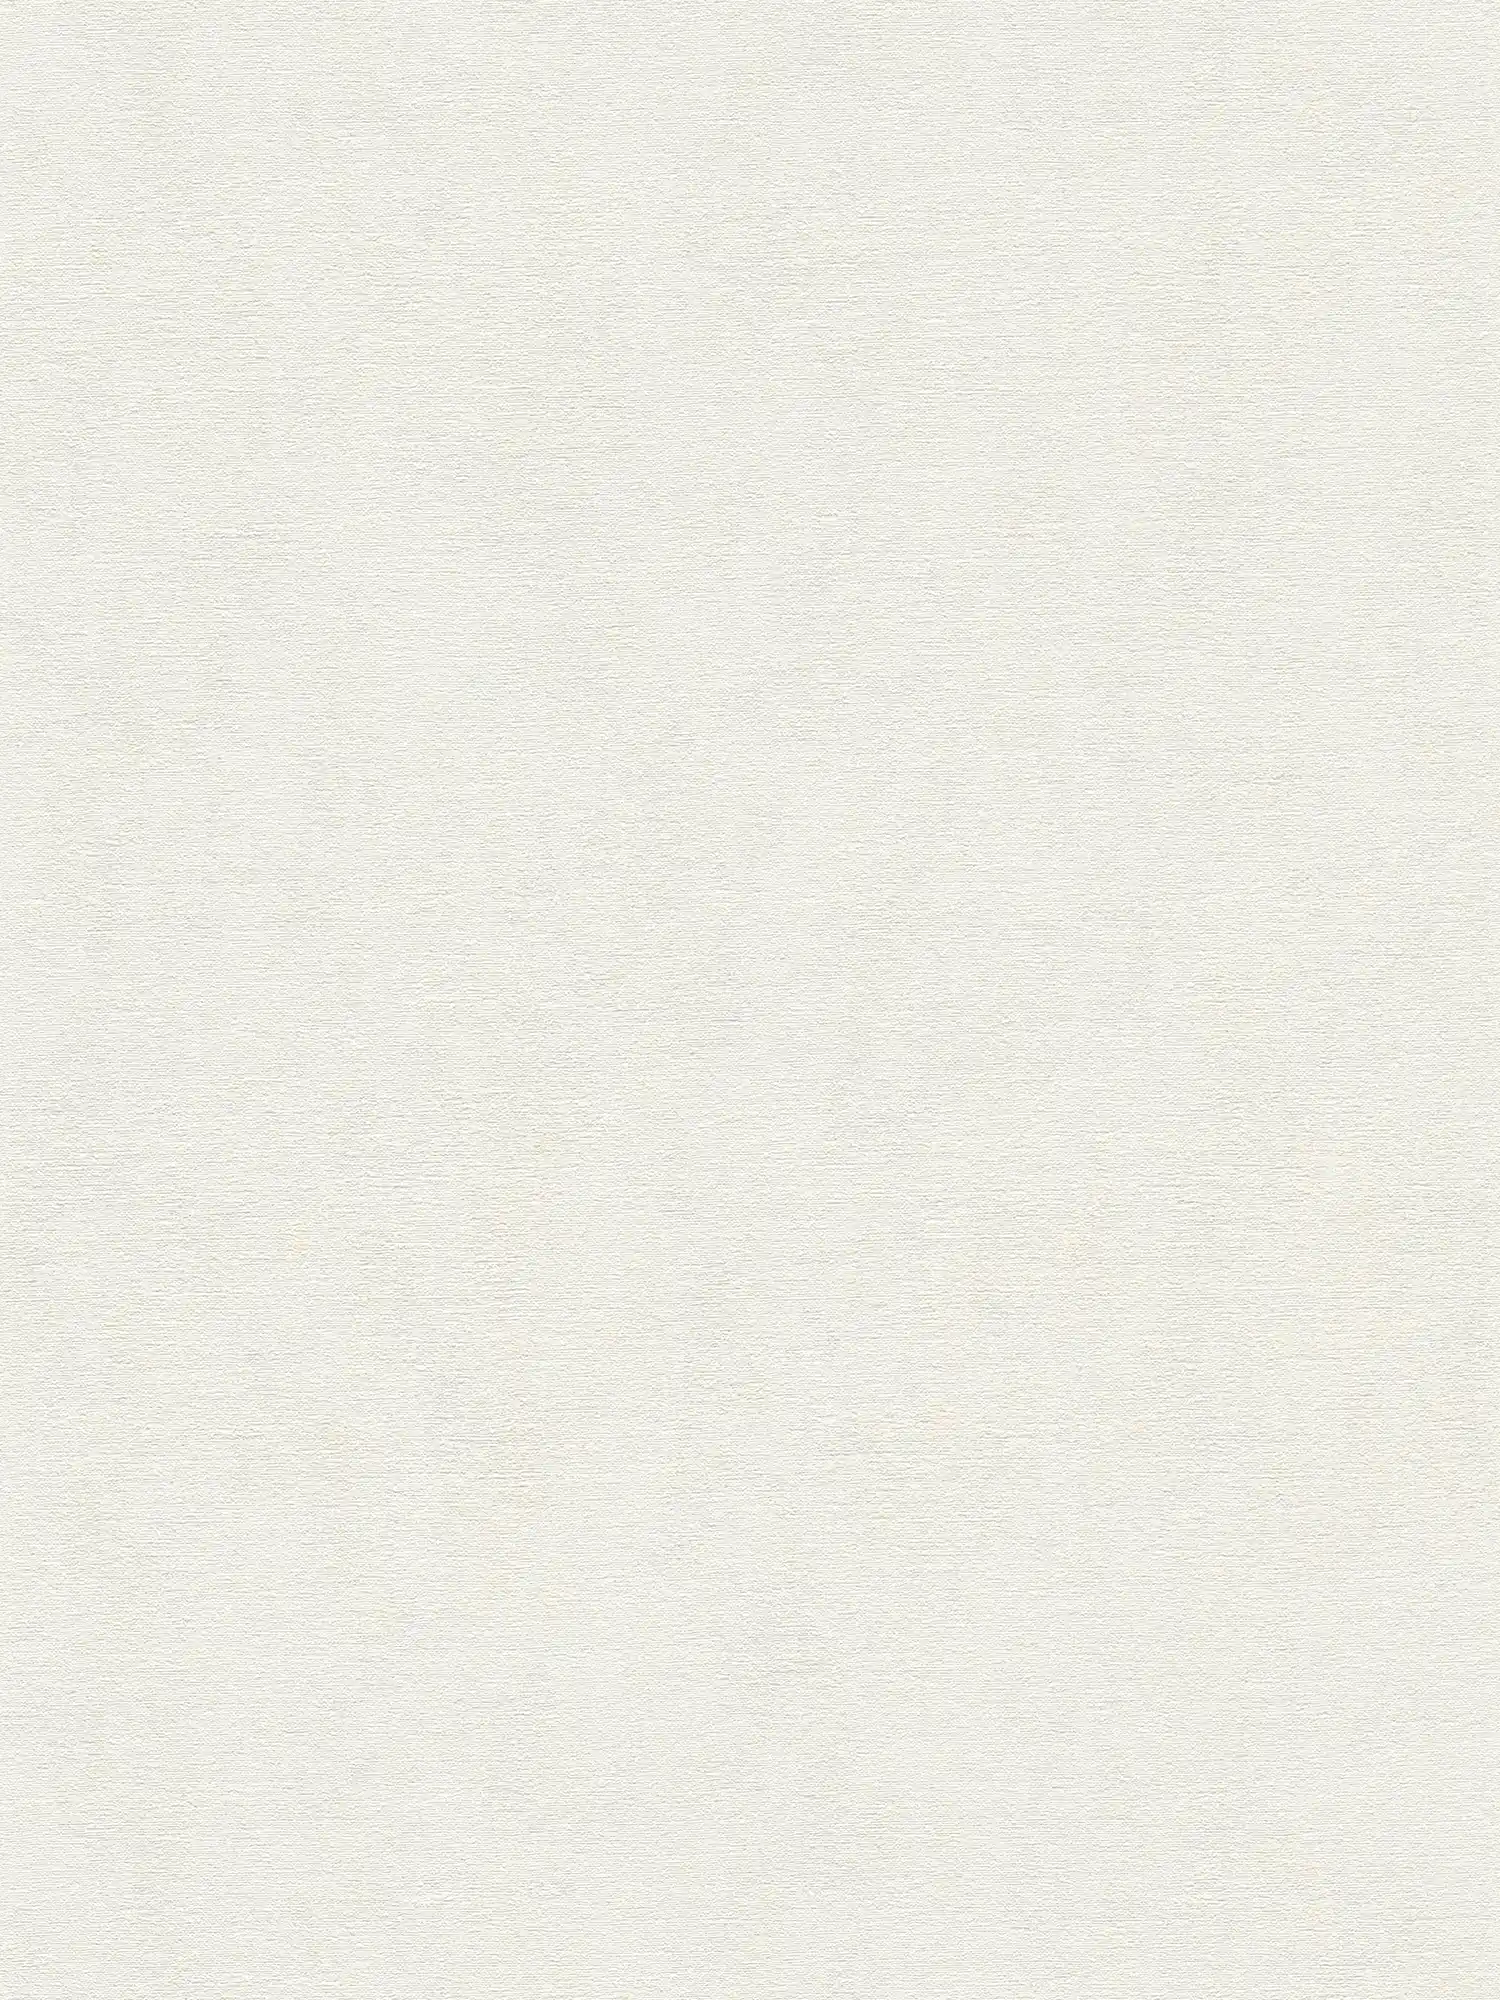 Vliesbehang in een effen kleur - wit
